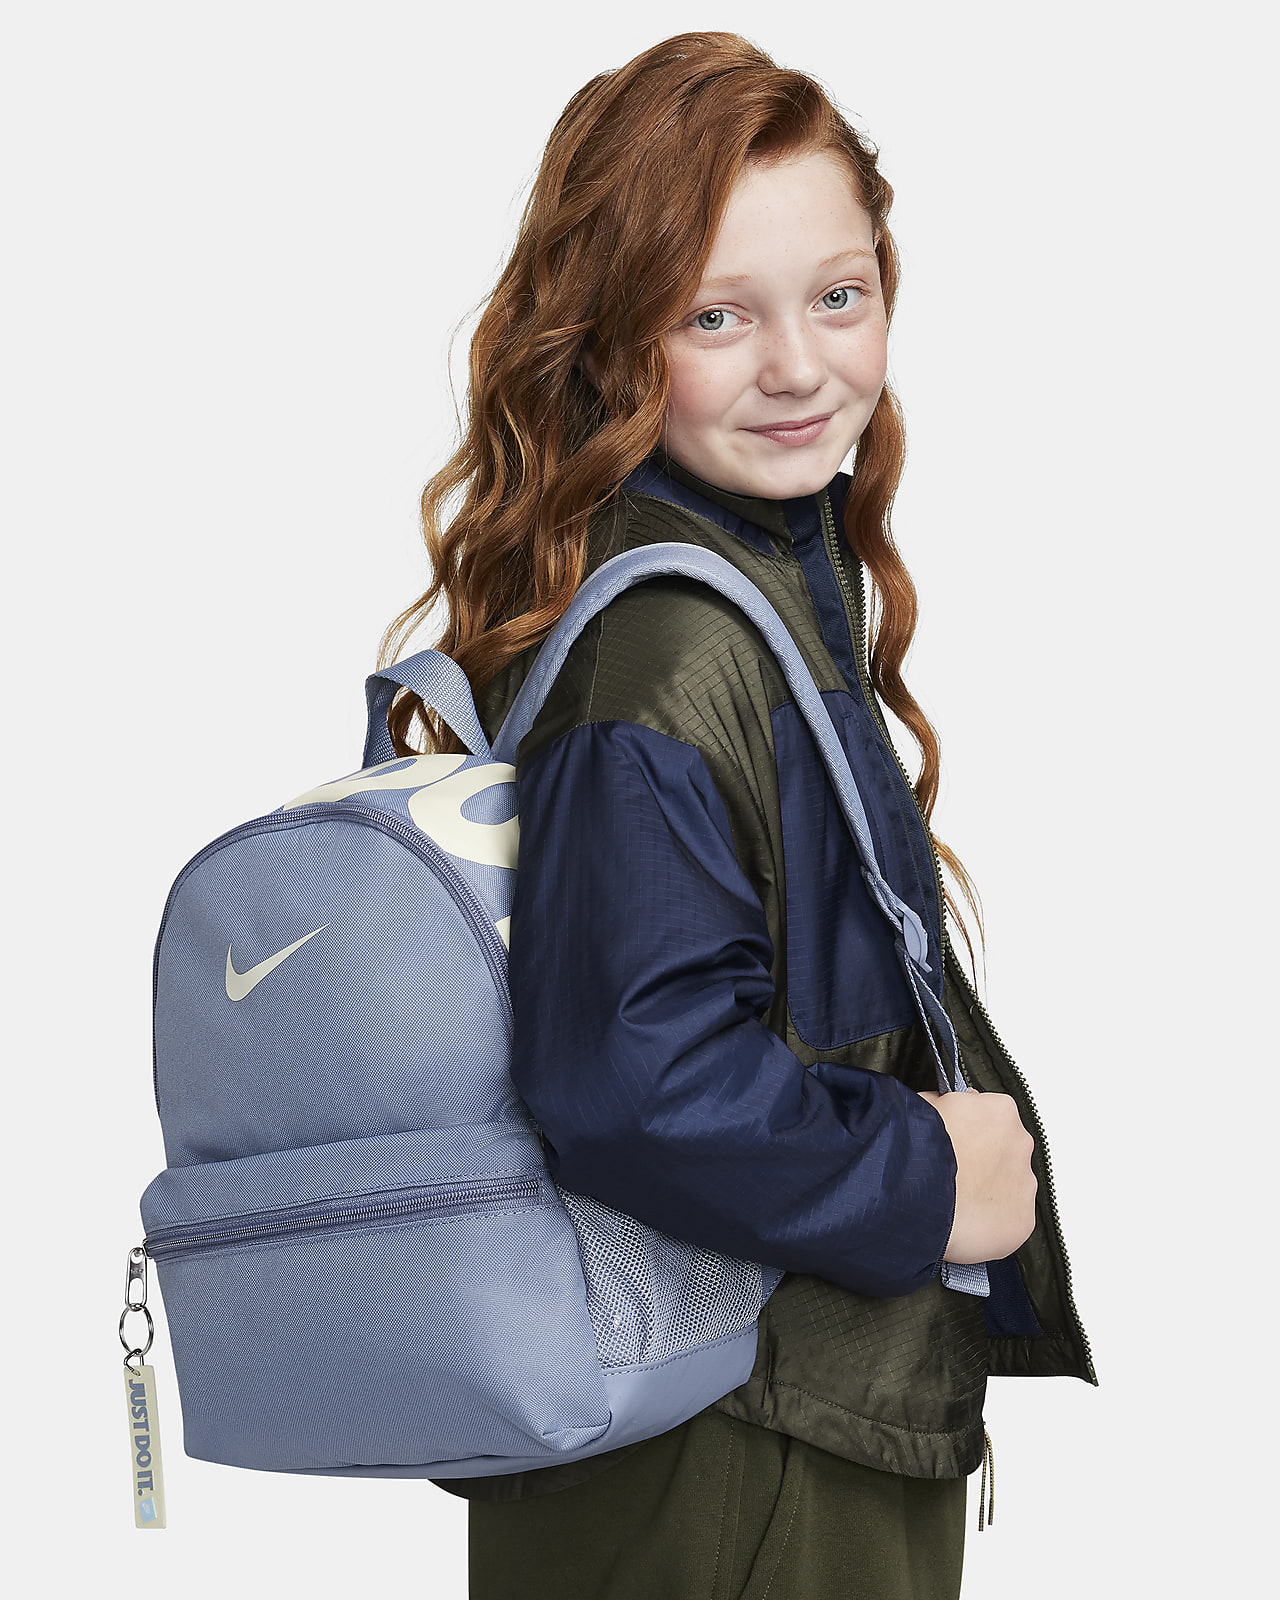 Nike Brasilia JDI Kids' Mini Backpack